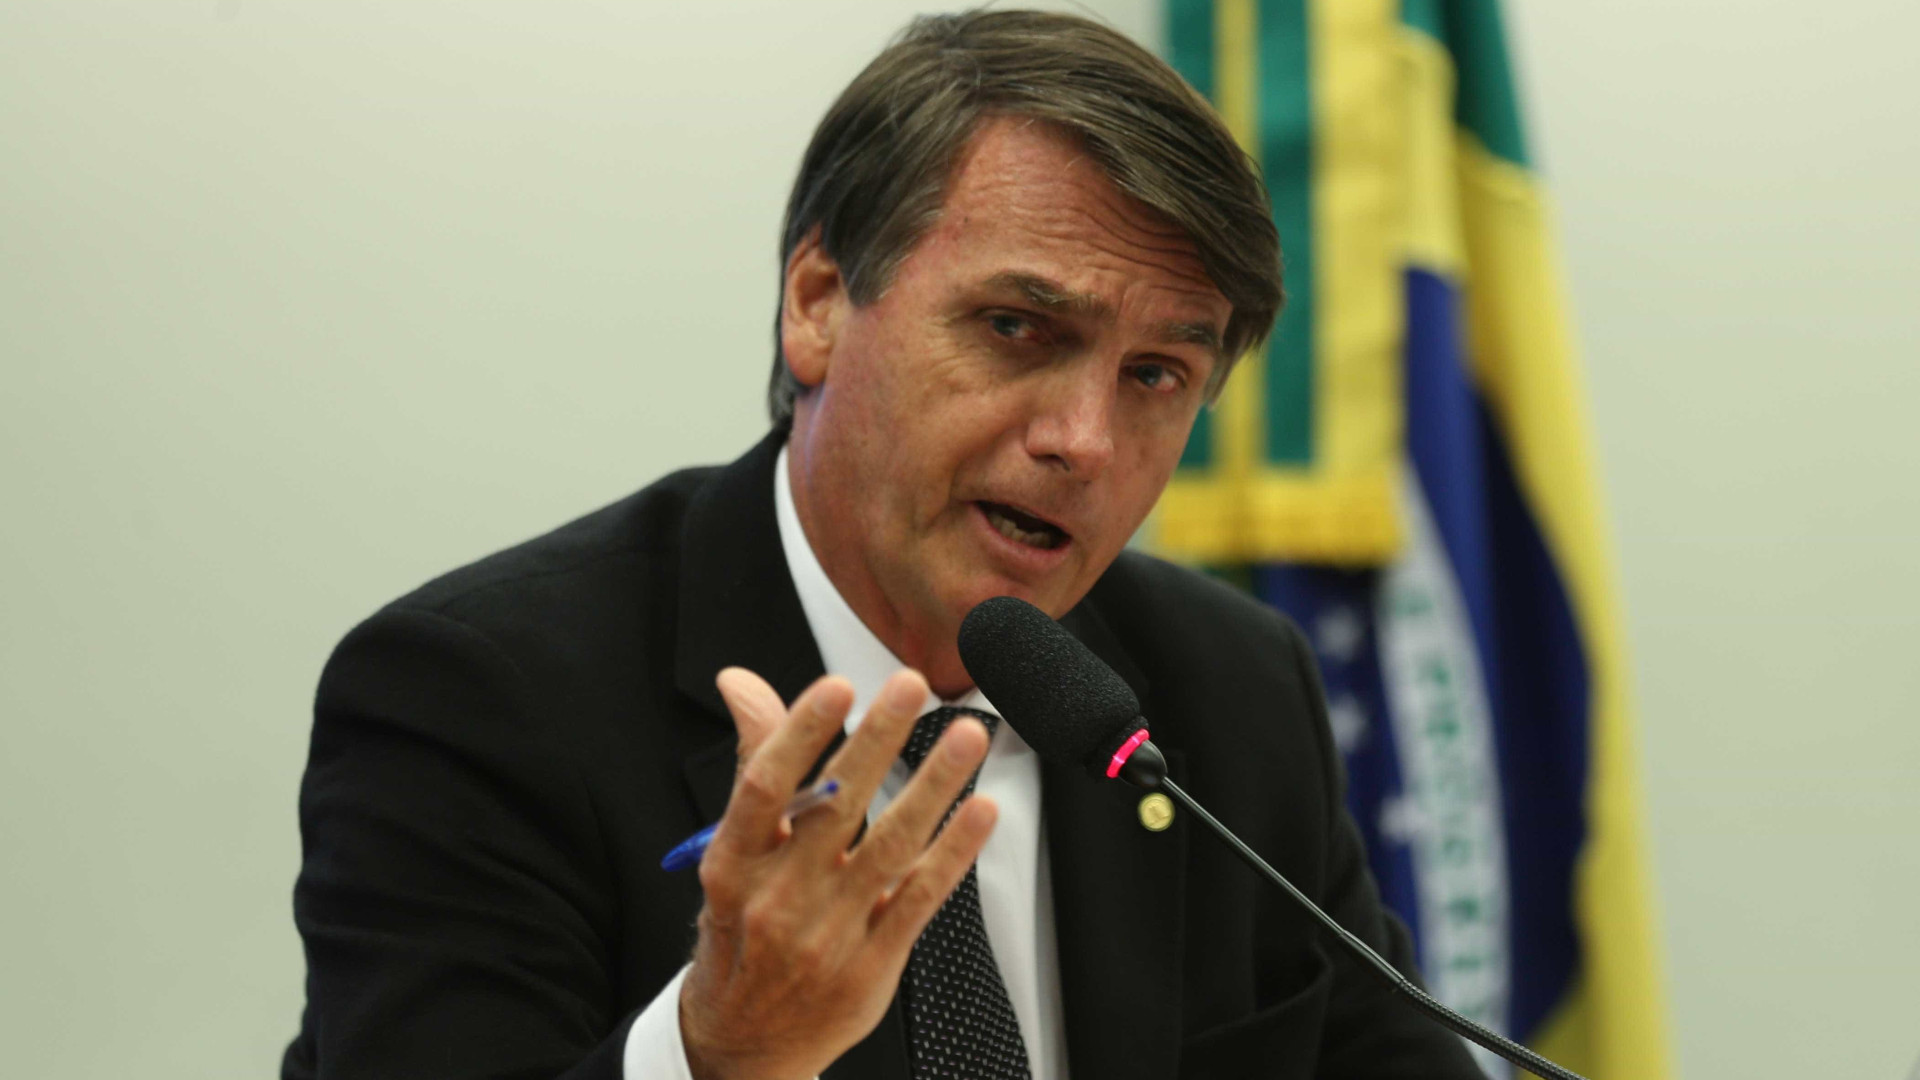 Para aliado, Bolsonaro será alvo preferencial em debate
